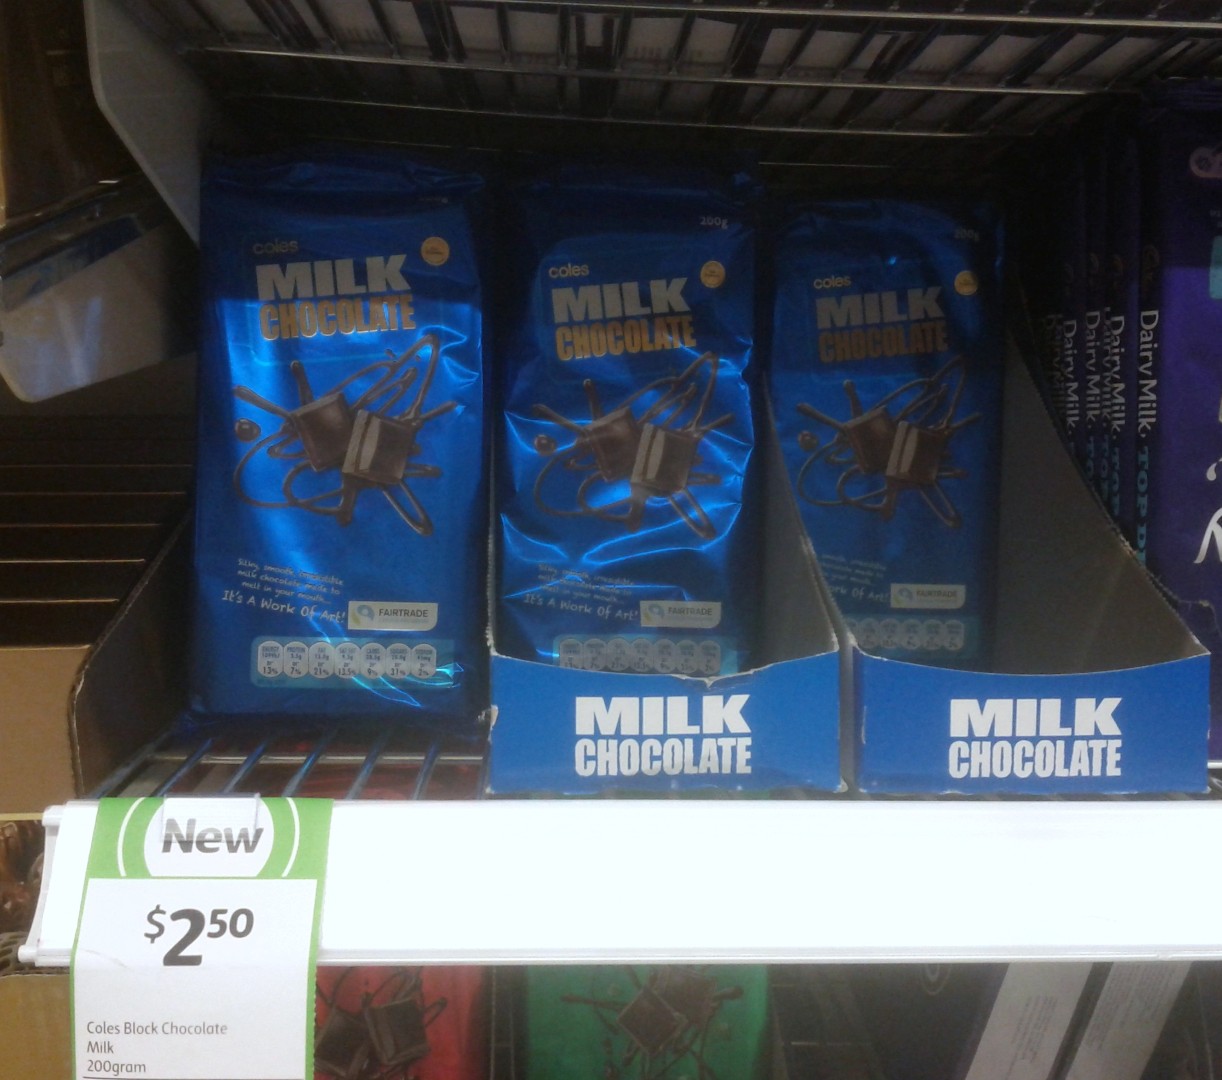 Coles 200g Milk Chocolate